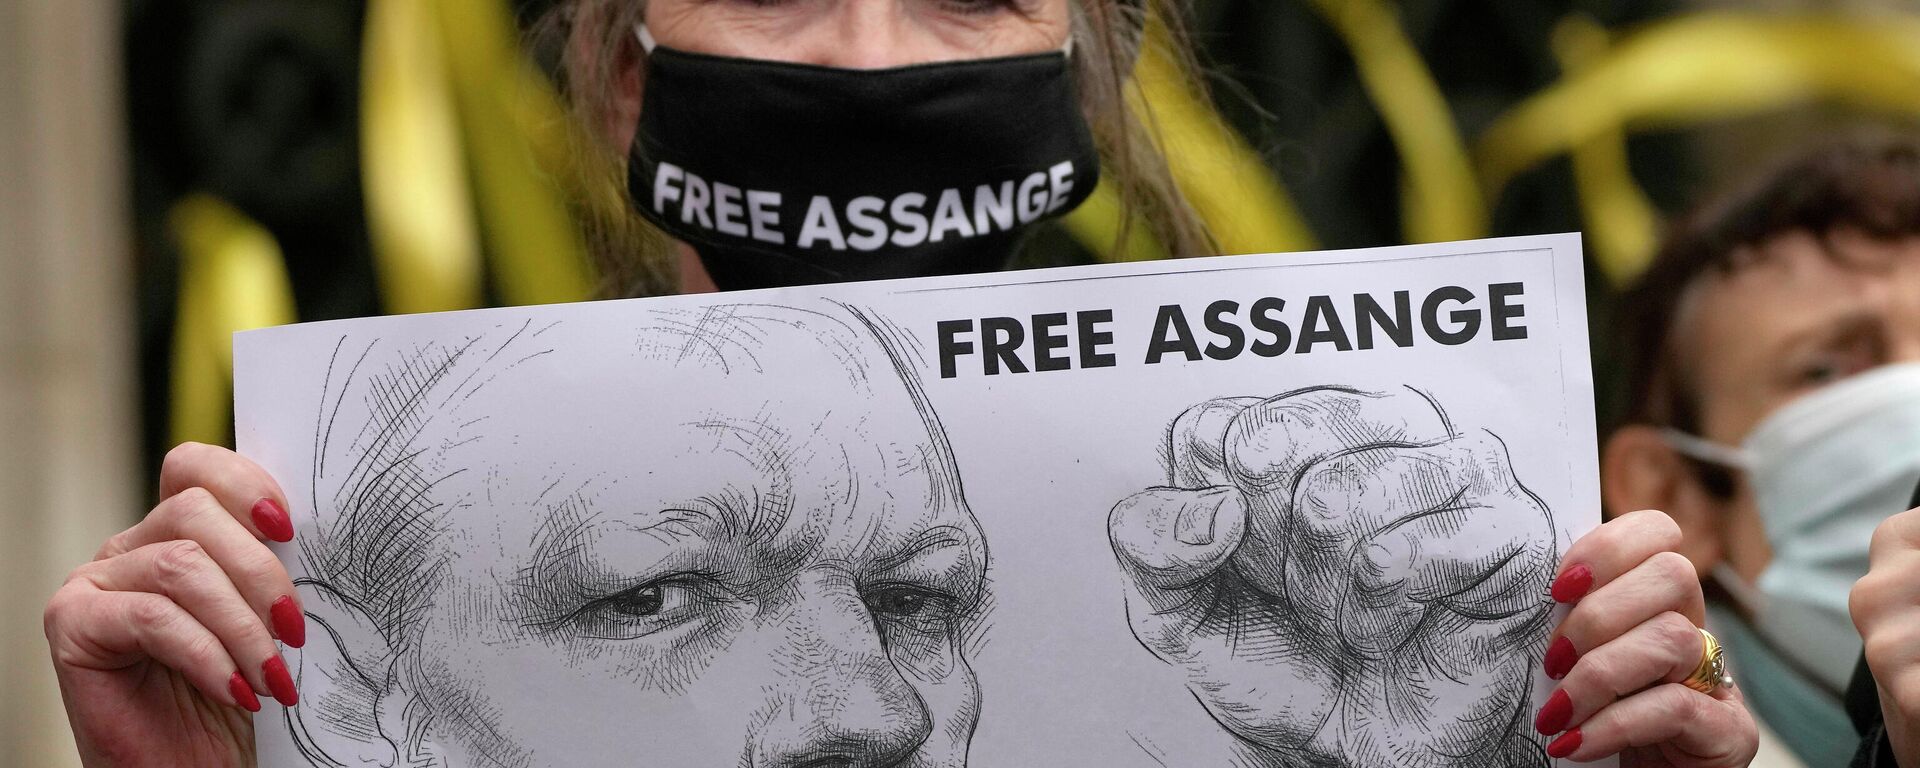 Las protestas contra la extradición de Assange a EEUU - Sputnik Mundo, 1920, 13.12.2021